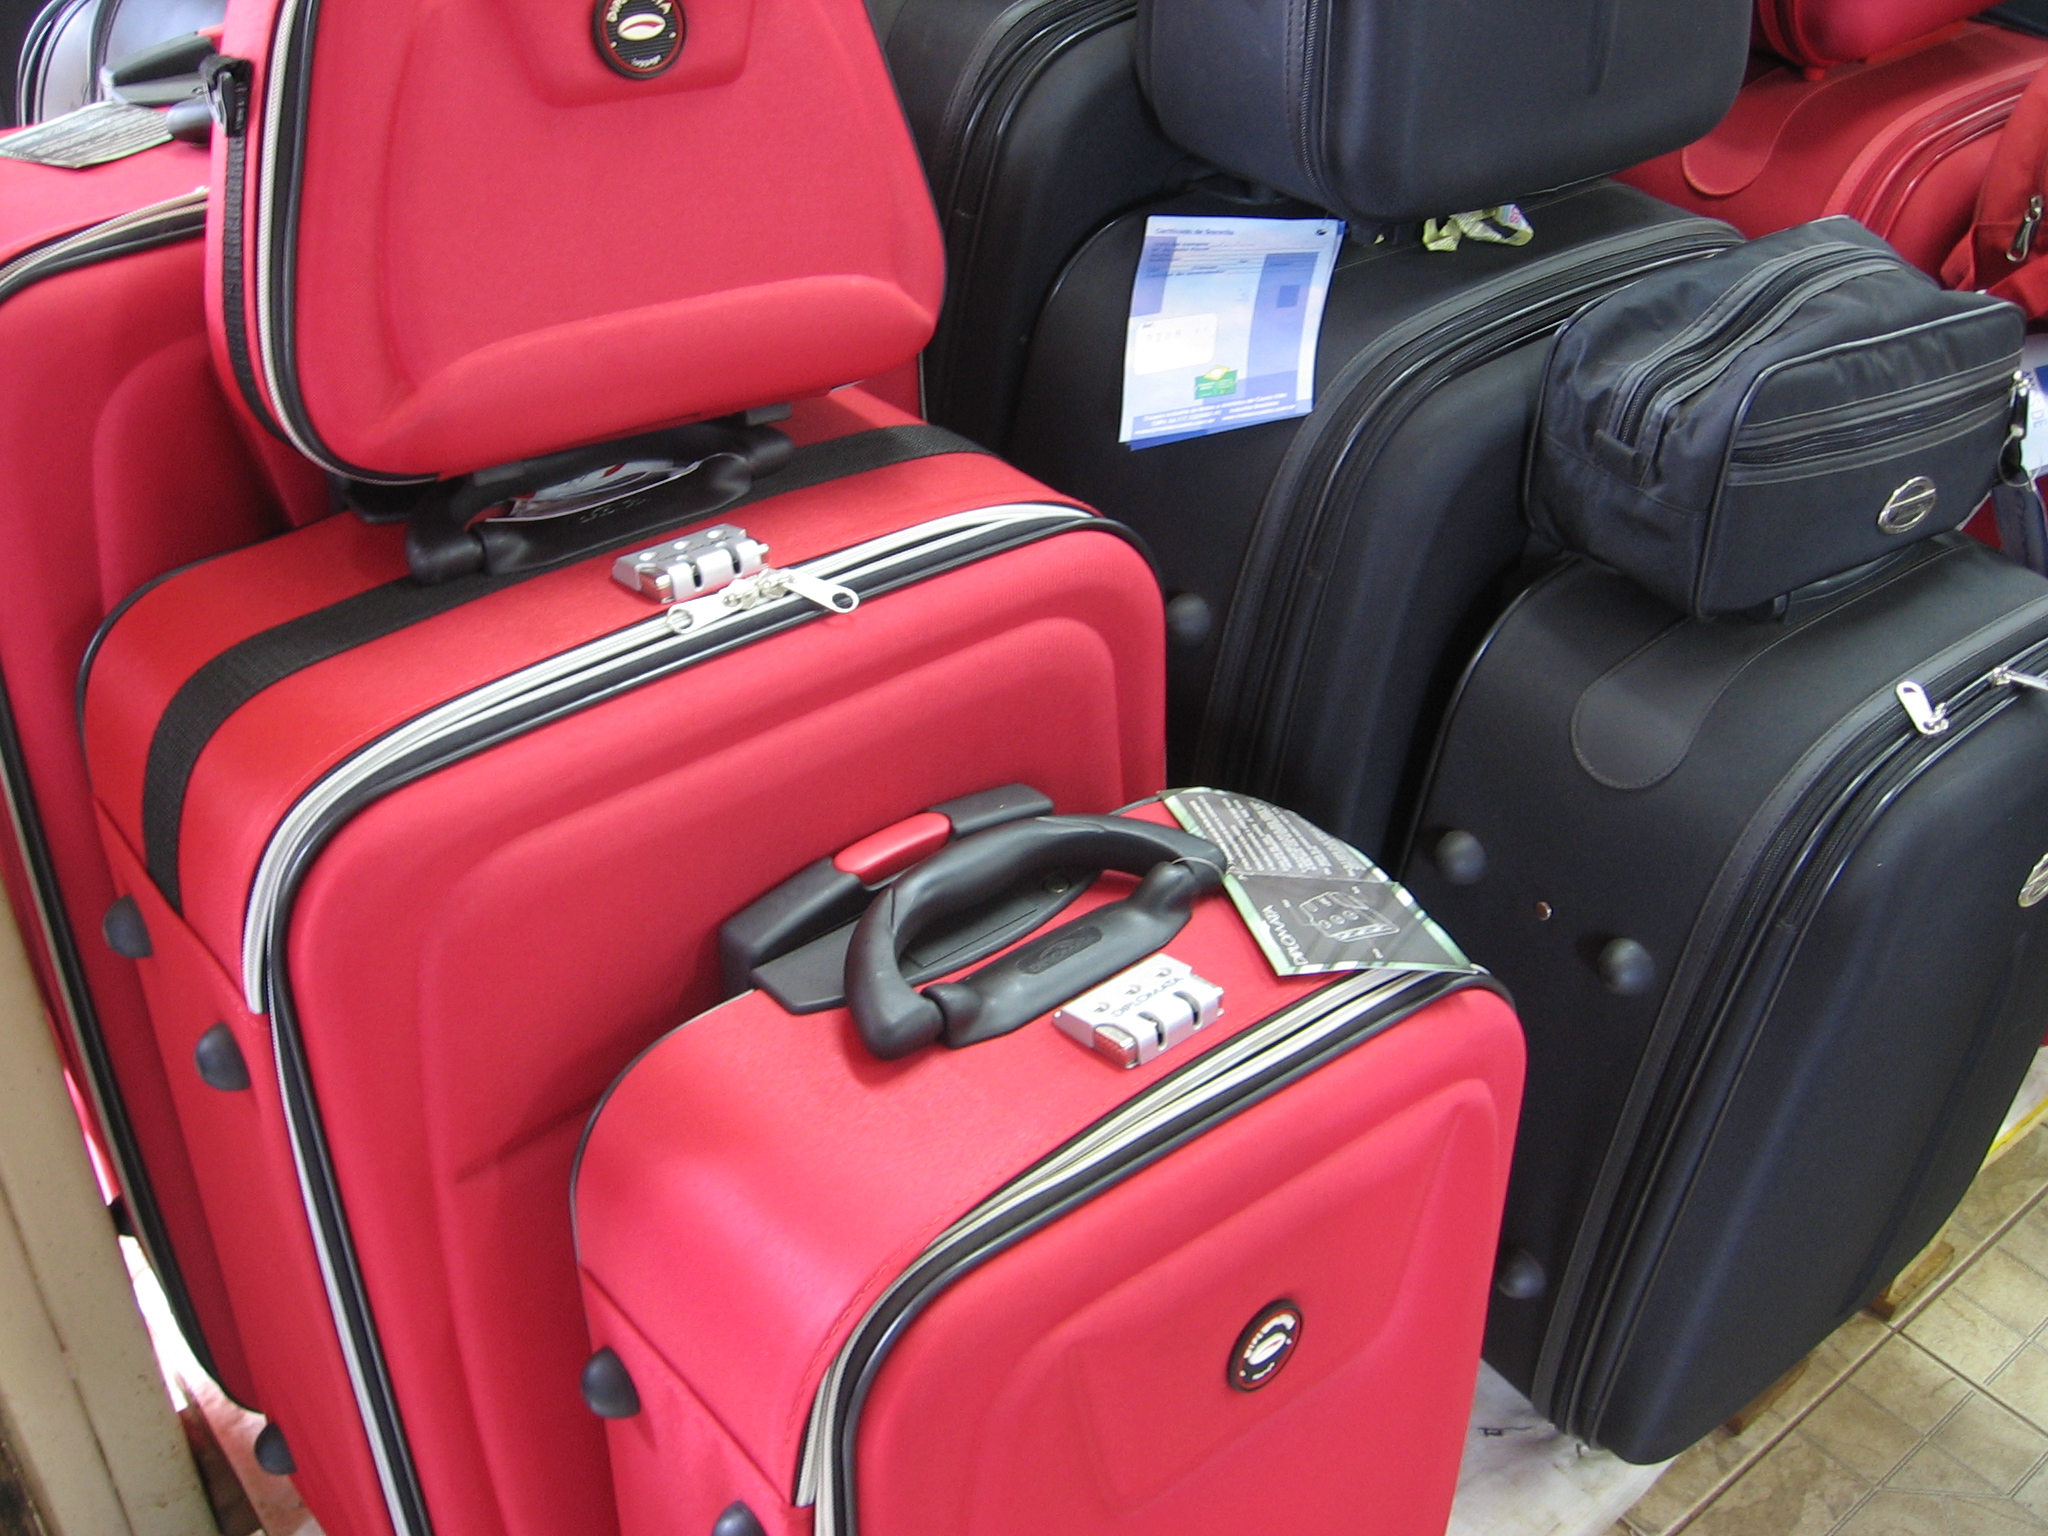 Novos acessórios ajudam viajantes a rastrear bagagens e localizar malas extraviadas